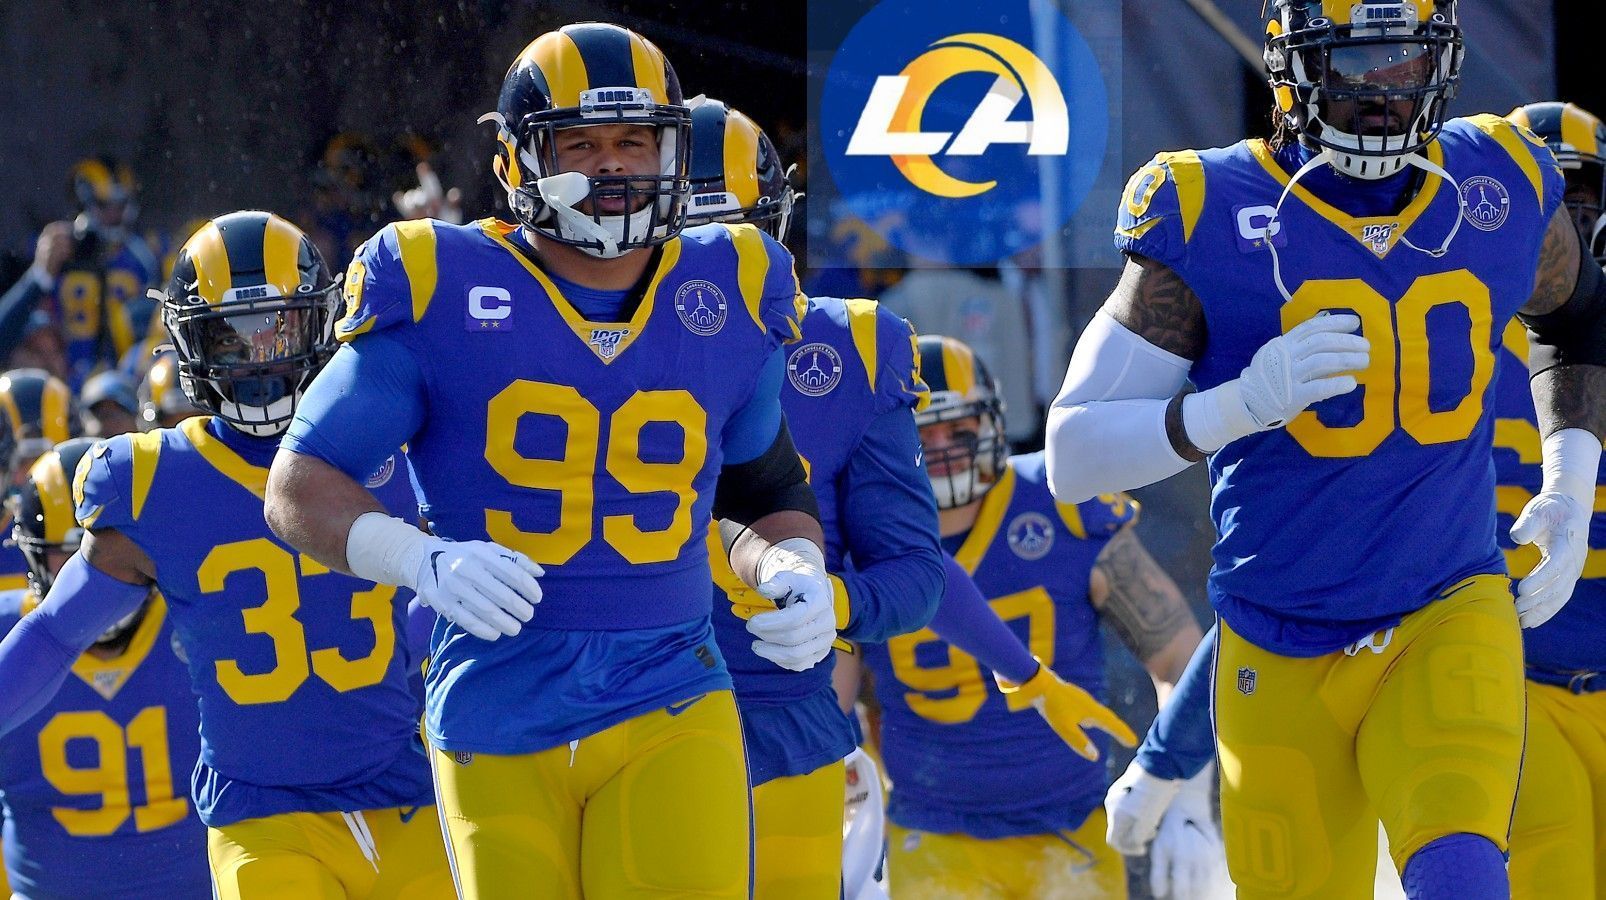 
                <strong>Nach den Rams - auch diese Teams wollen wohl ihr Logo oder Trikot verändern</strong><br>
                Jetzt ist es raus: Die Los Angeles Rams haben offiziell ihr neues Logo enthüllt. Doch damit nicht genug: Schon bald möchte die Franchise aus Kalifornien auch noch brandneue Trikots präsentieren. Laut Joe Reedy von "Associated Press Sports" werden und wollen nun noch weitere NFL-Teams dem Beispiel der Rams folgen und ebenfalls kurz- oder mittelfristig ein neues Logo und/oder Trikot präsentieren. ran.de gibt einen Überblick.
              